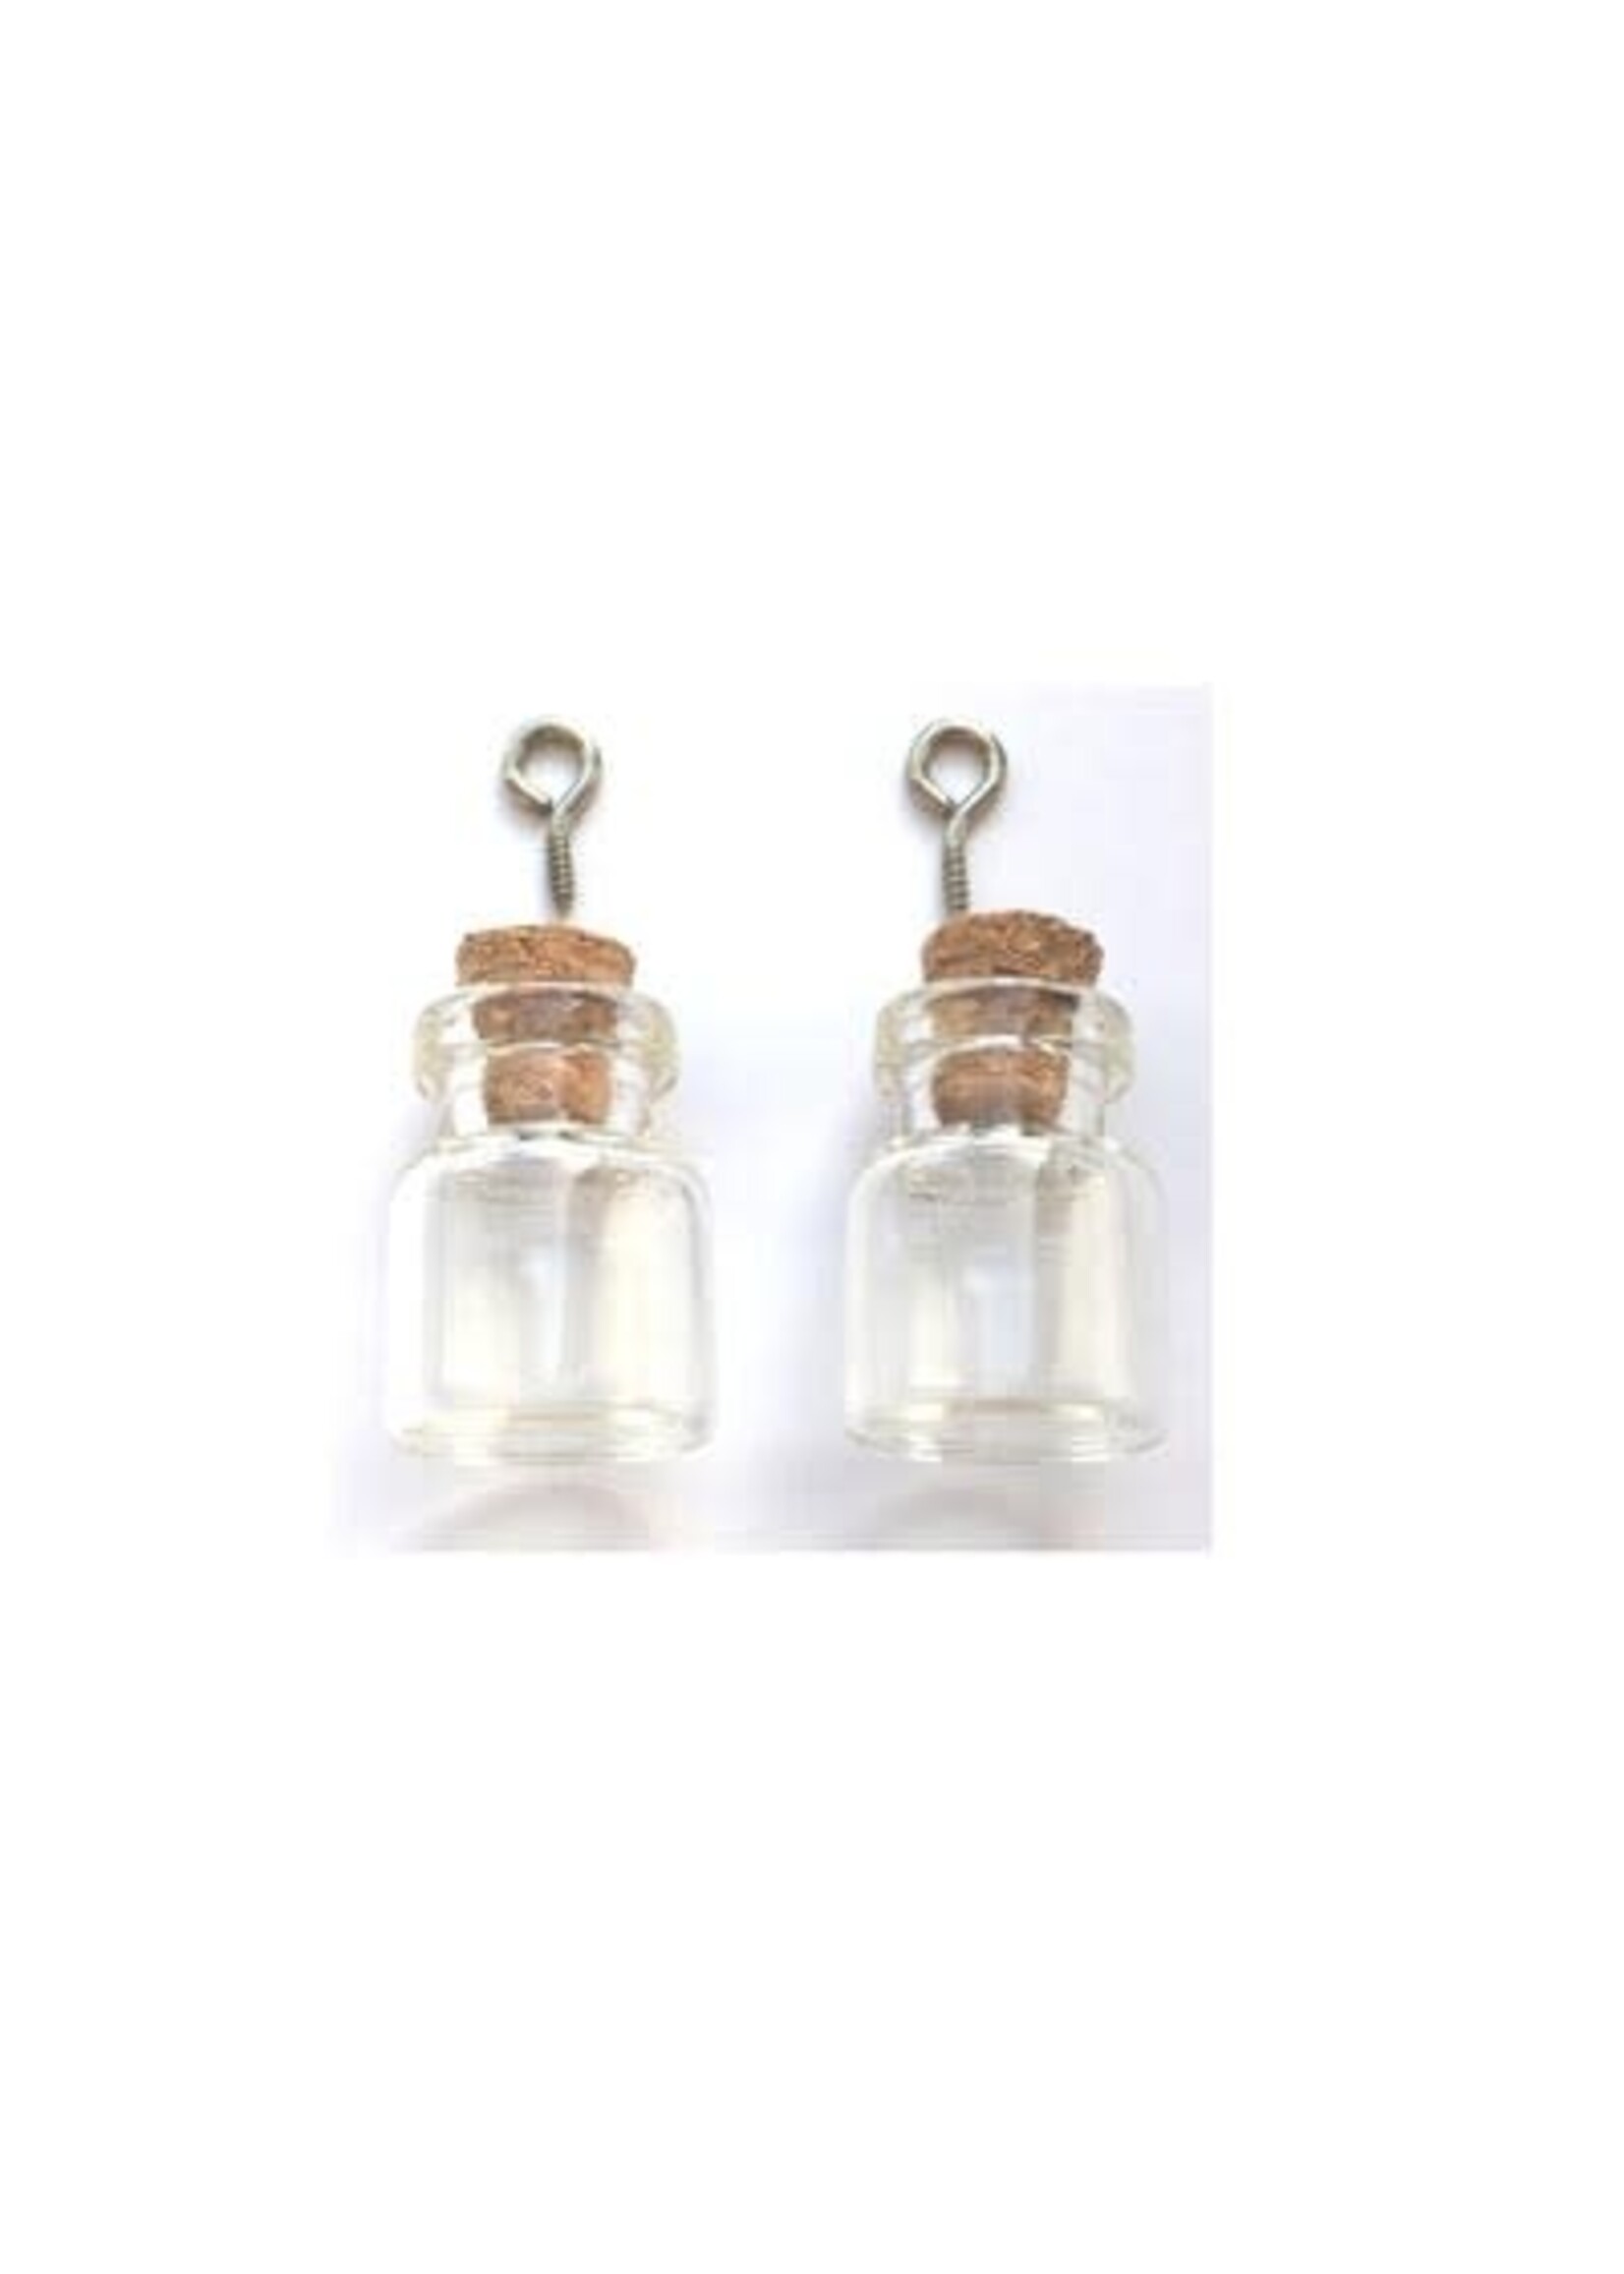 12423-2302 - Mini Glass Bottles, with cork & screw hanger